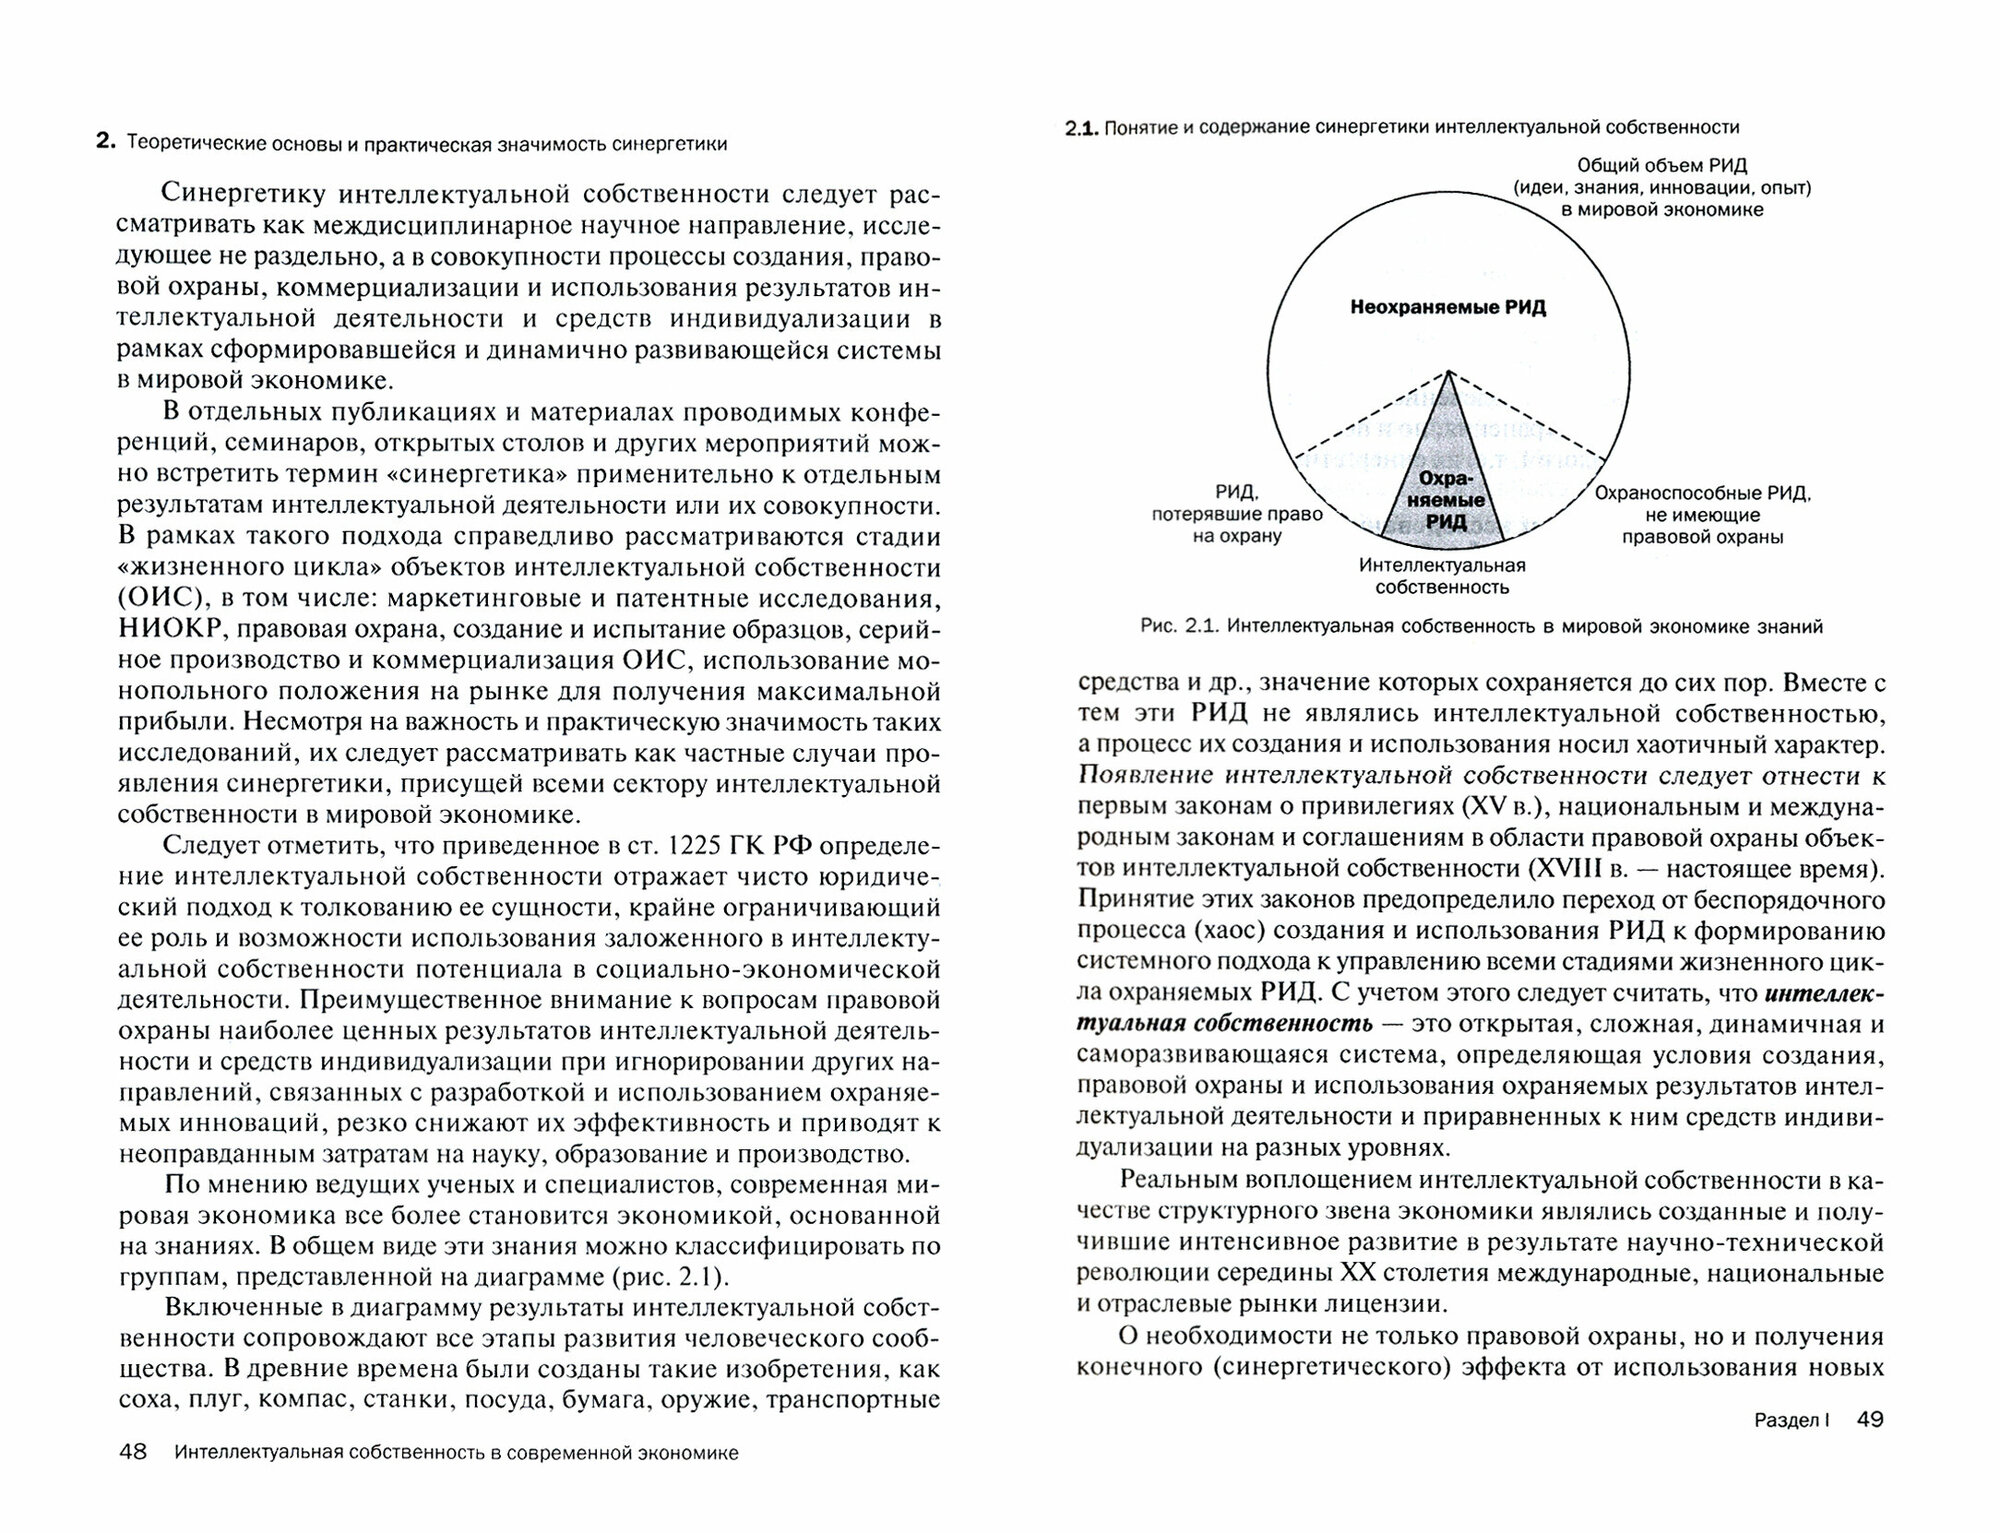 Интеллектуальная собственность в современной экономике. Система и ее синергетика. Учебник - фото №3